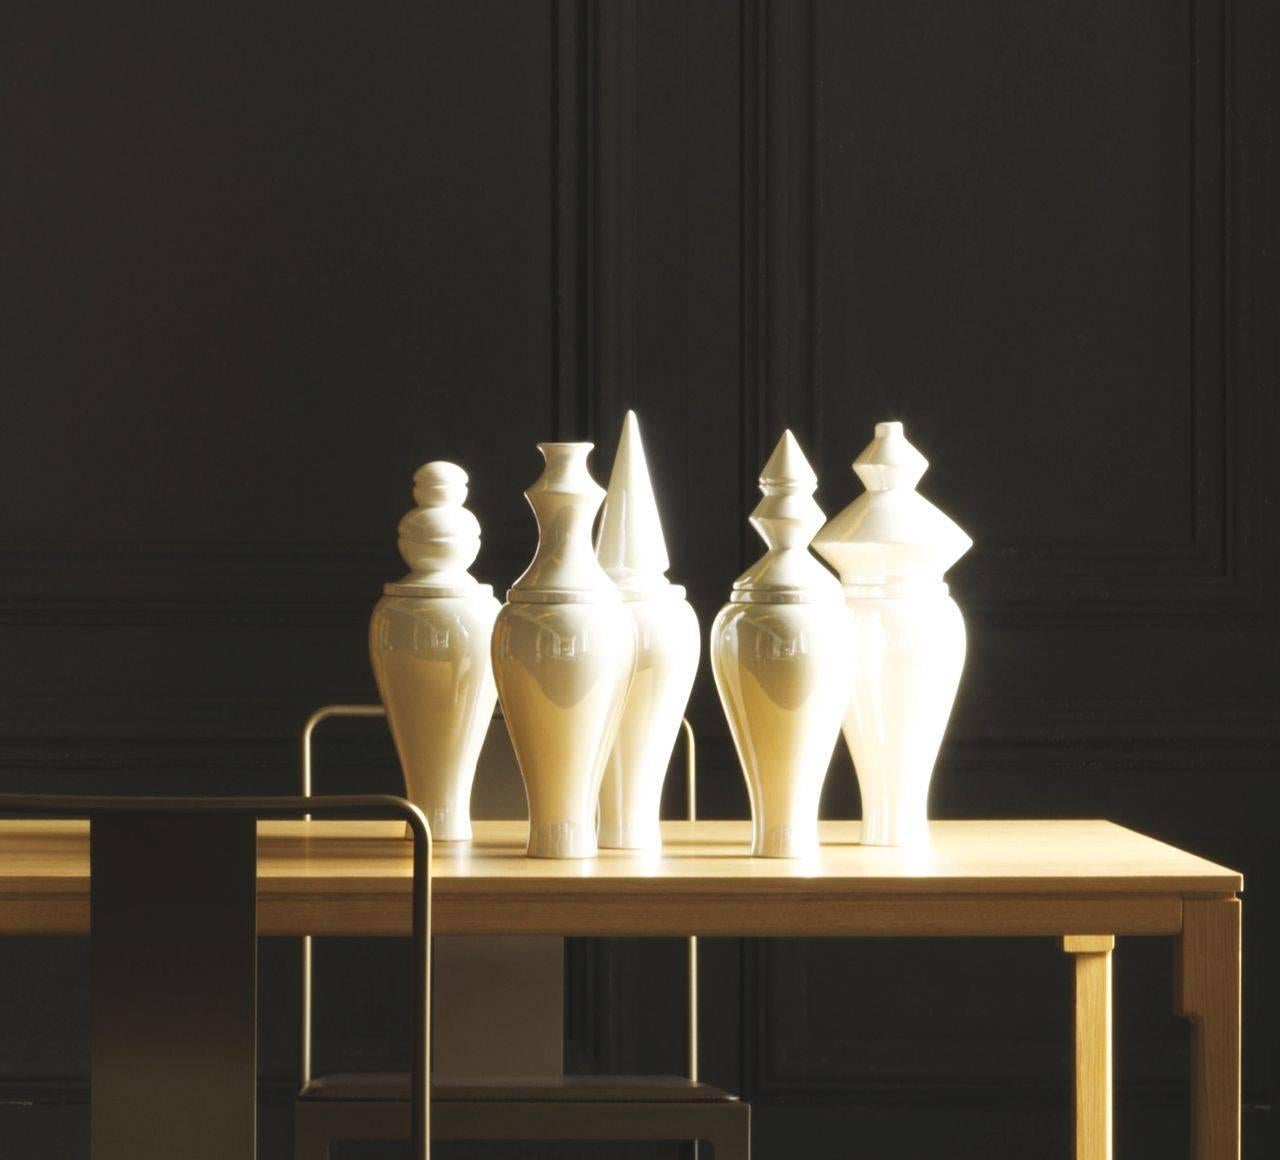 Die flüchtige und rätselhafte Kollektion besteht aus sechs verschiedenen perlmuttfarbenen Keramikdeckeln auf perlmuttfarbenen Keramikvasen. Die Kollektion 